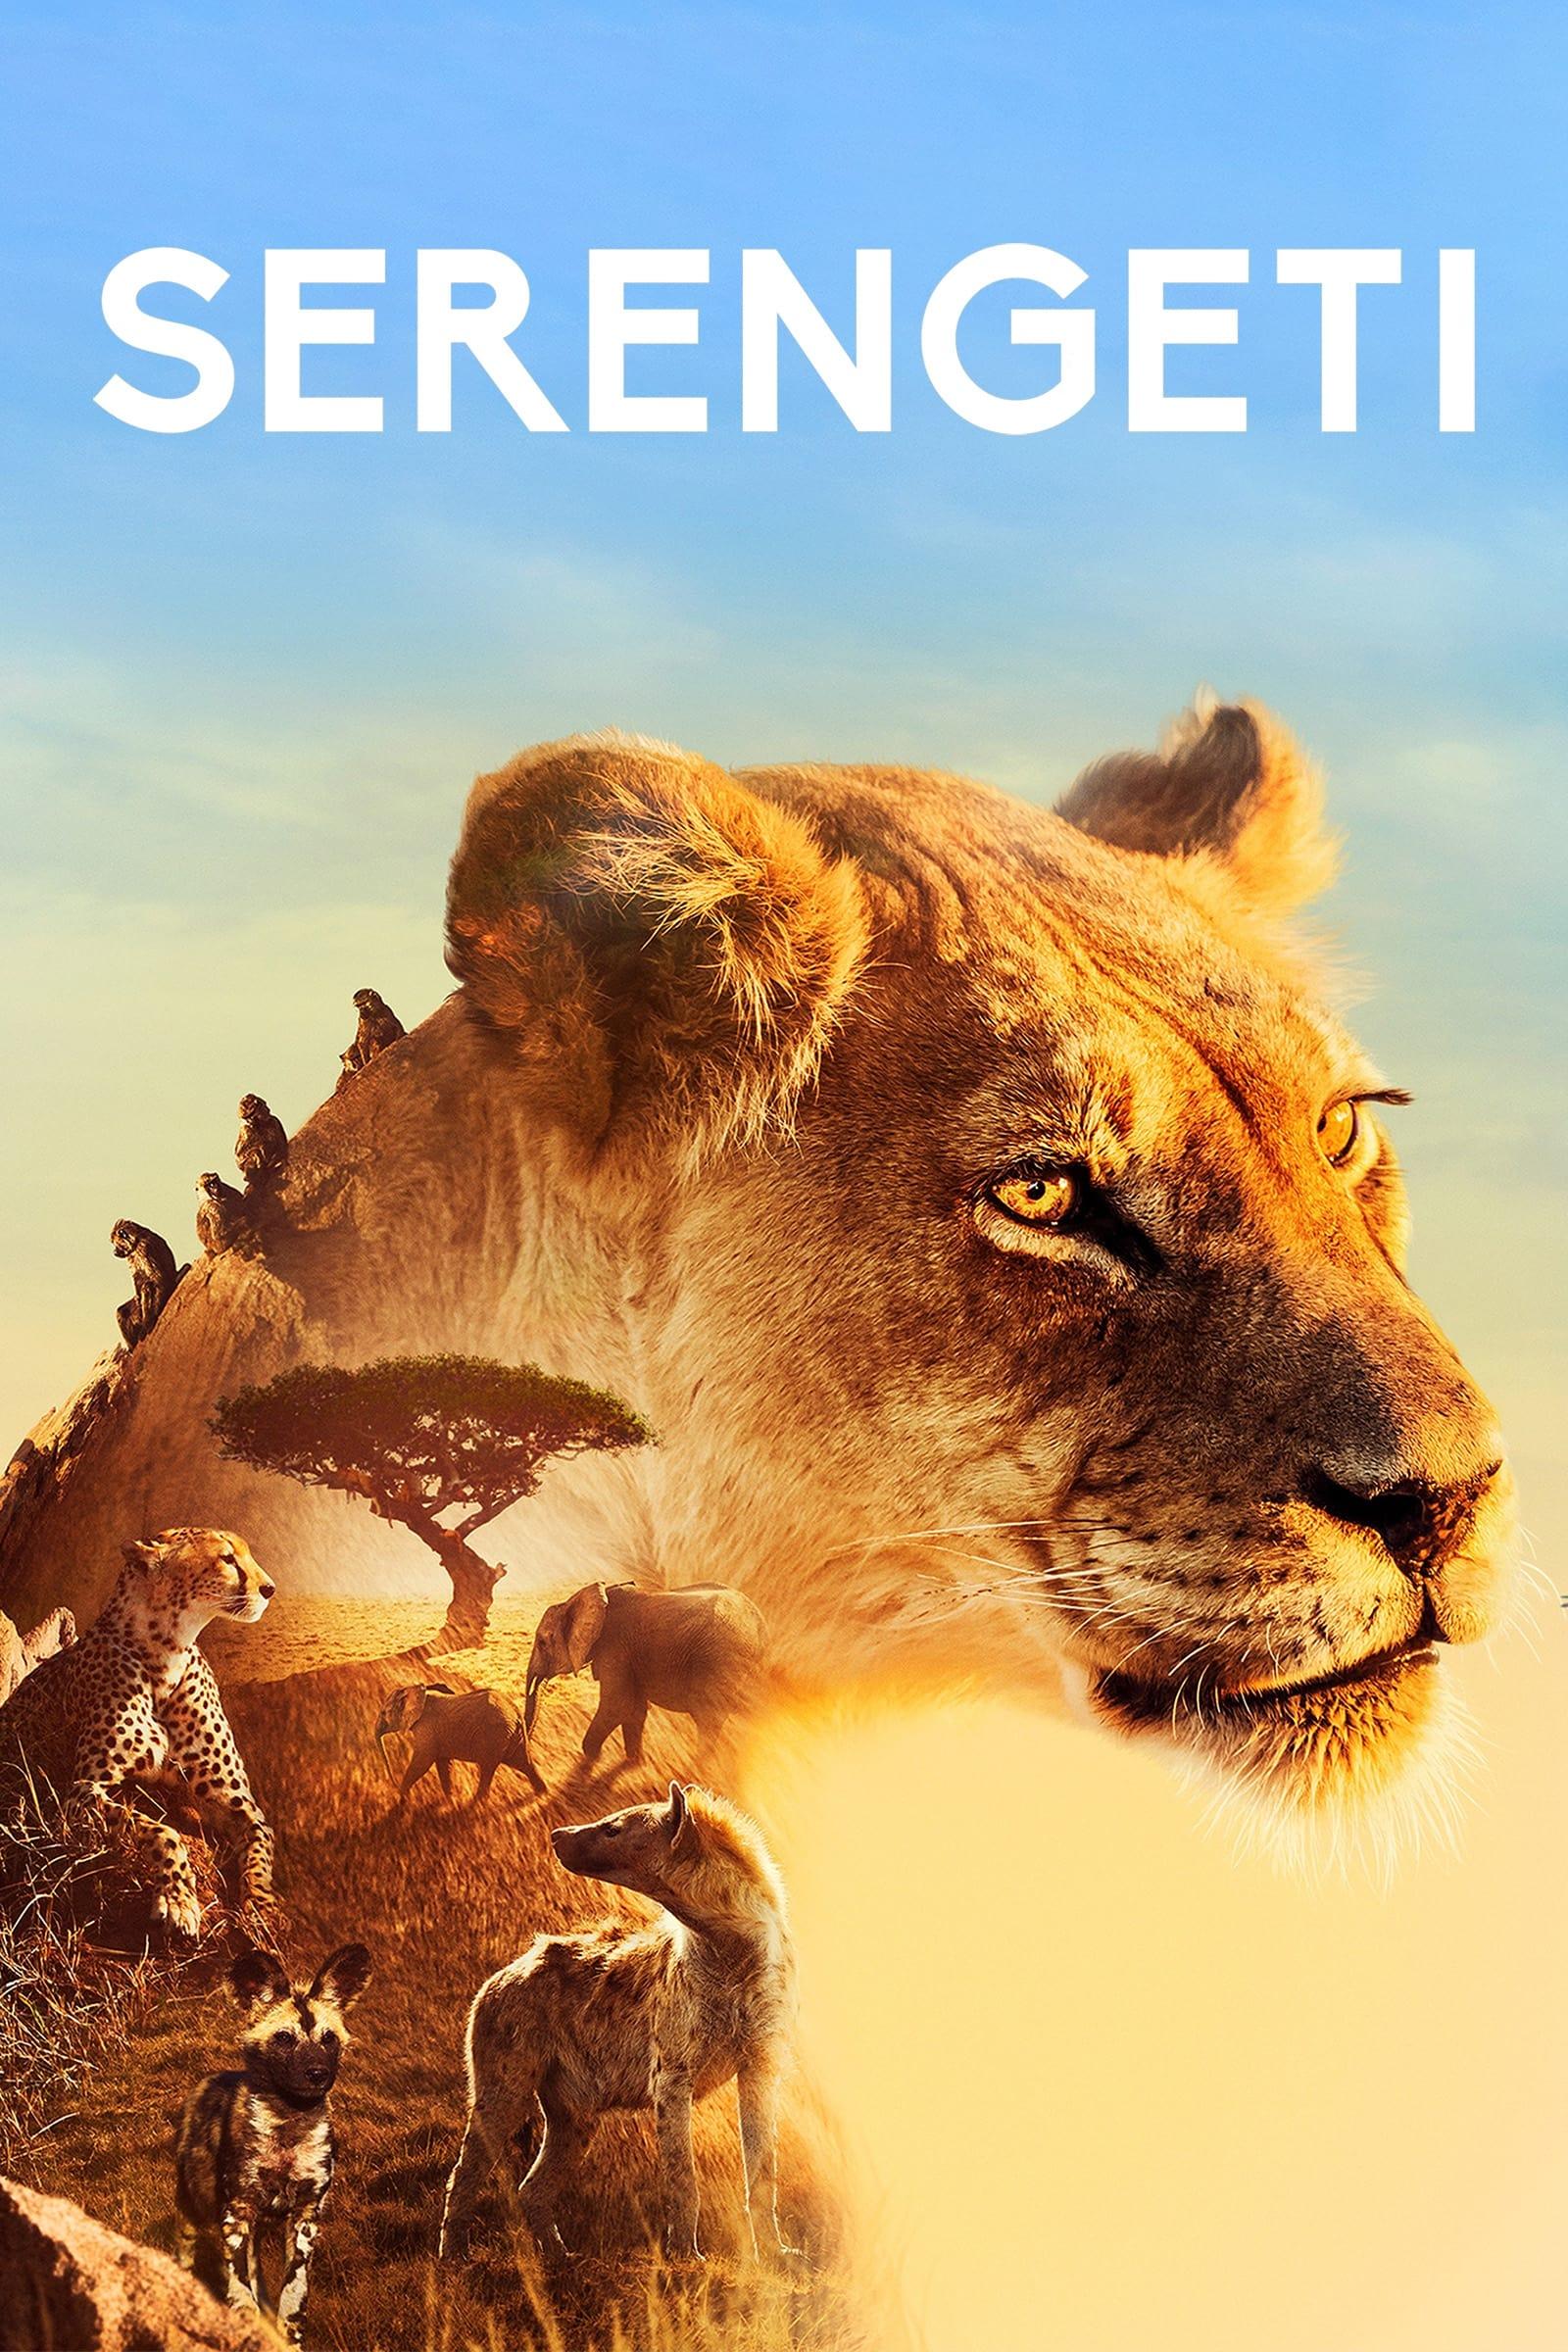 Serengeti poster